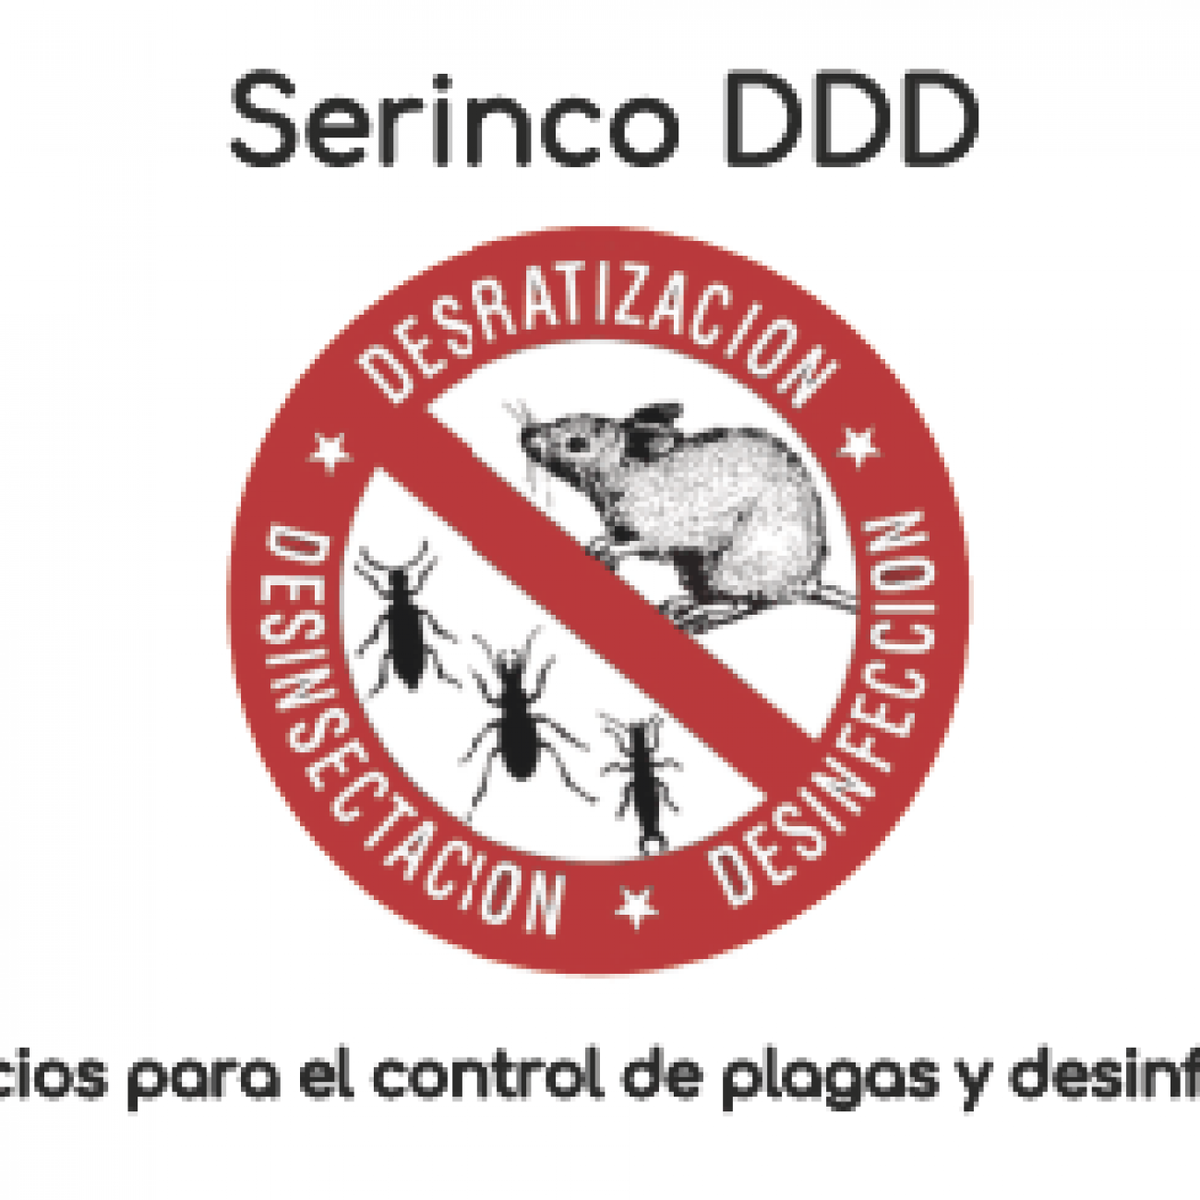 Servicios para el control de plagas y desinfección en Bilbao